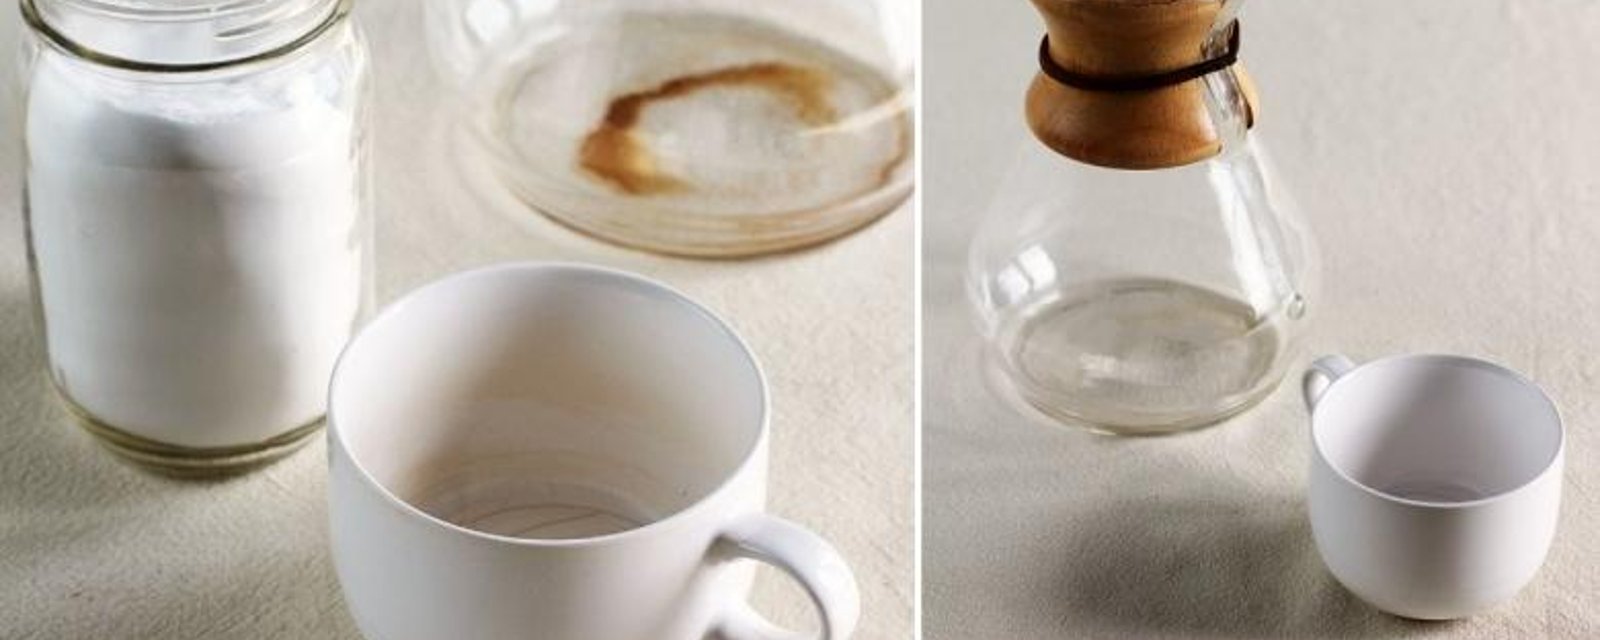 La meilleure façon de détacher les tasses et la cafetière, des taches de café!